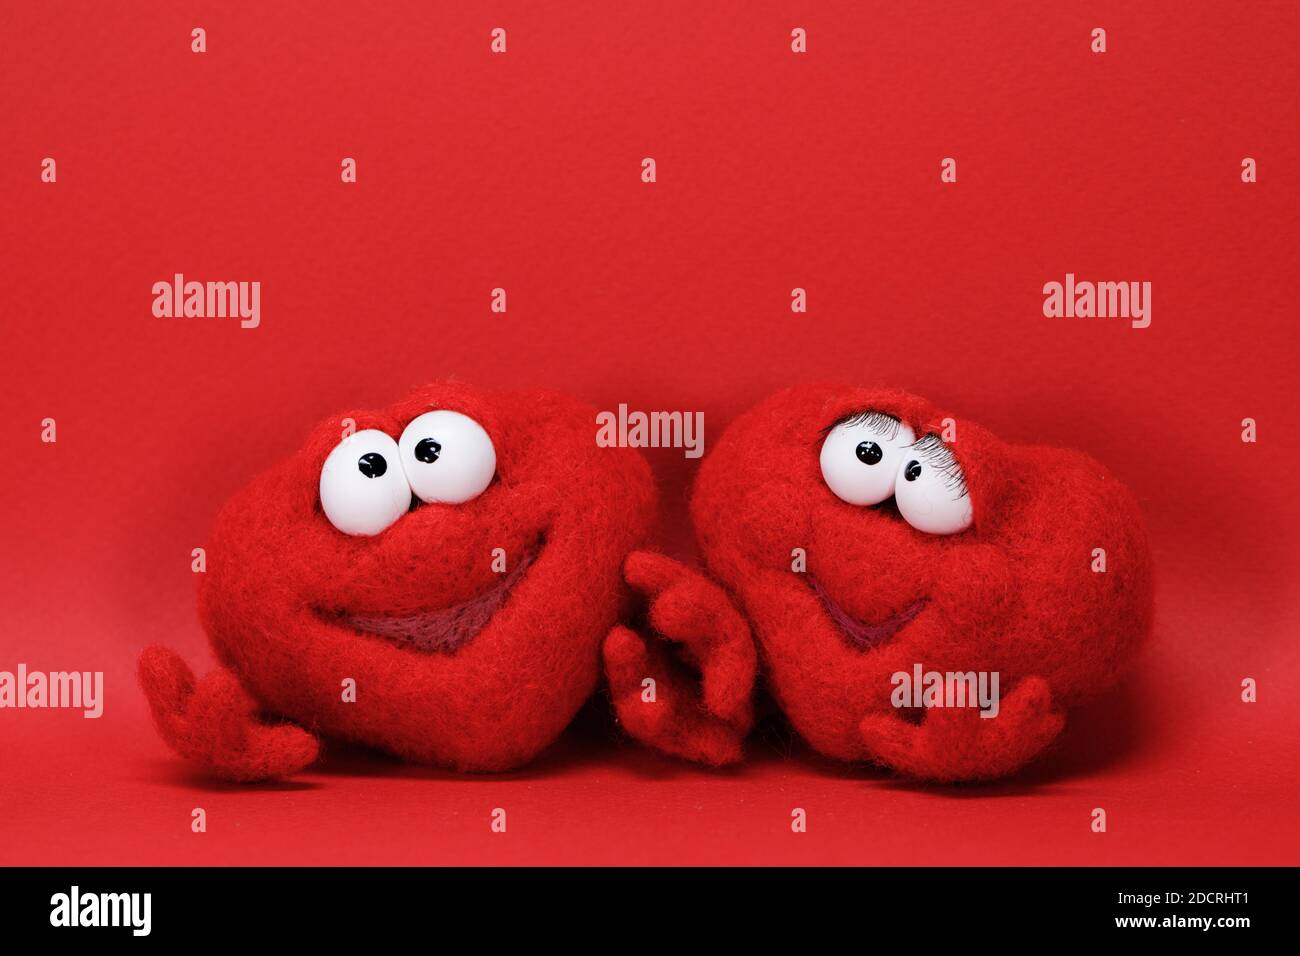 Due cuori rossi giocattolo su sfondo rosso con spazio di copia per il testo, simbolo dell'amore, healtcare, concetto di giorno di valentines Foto Stock